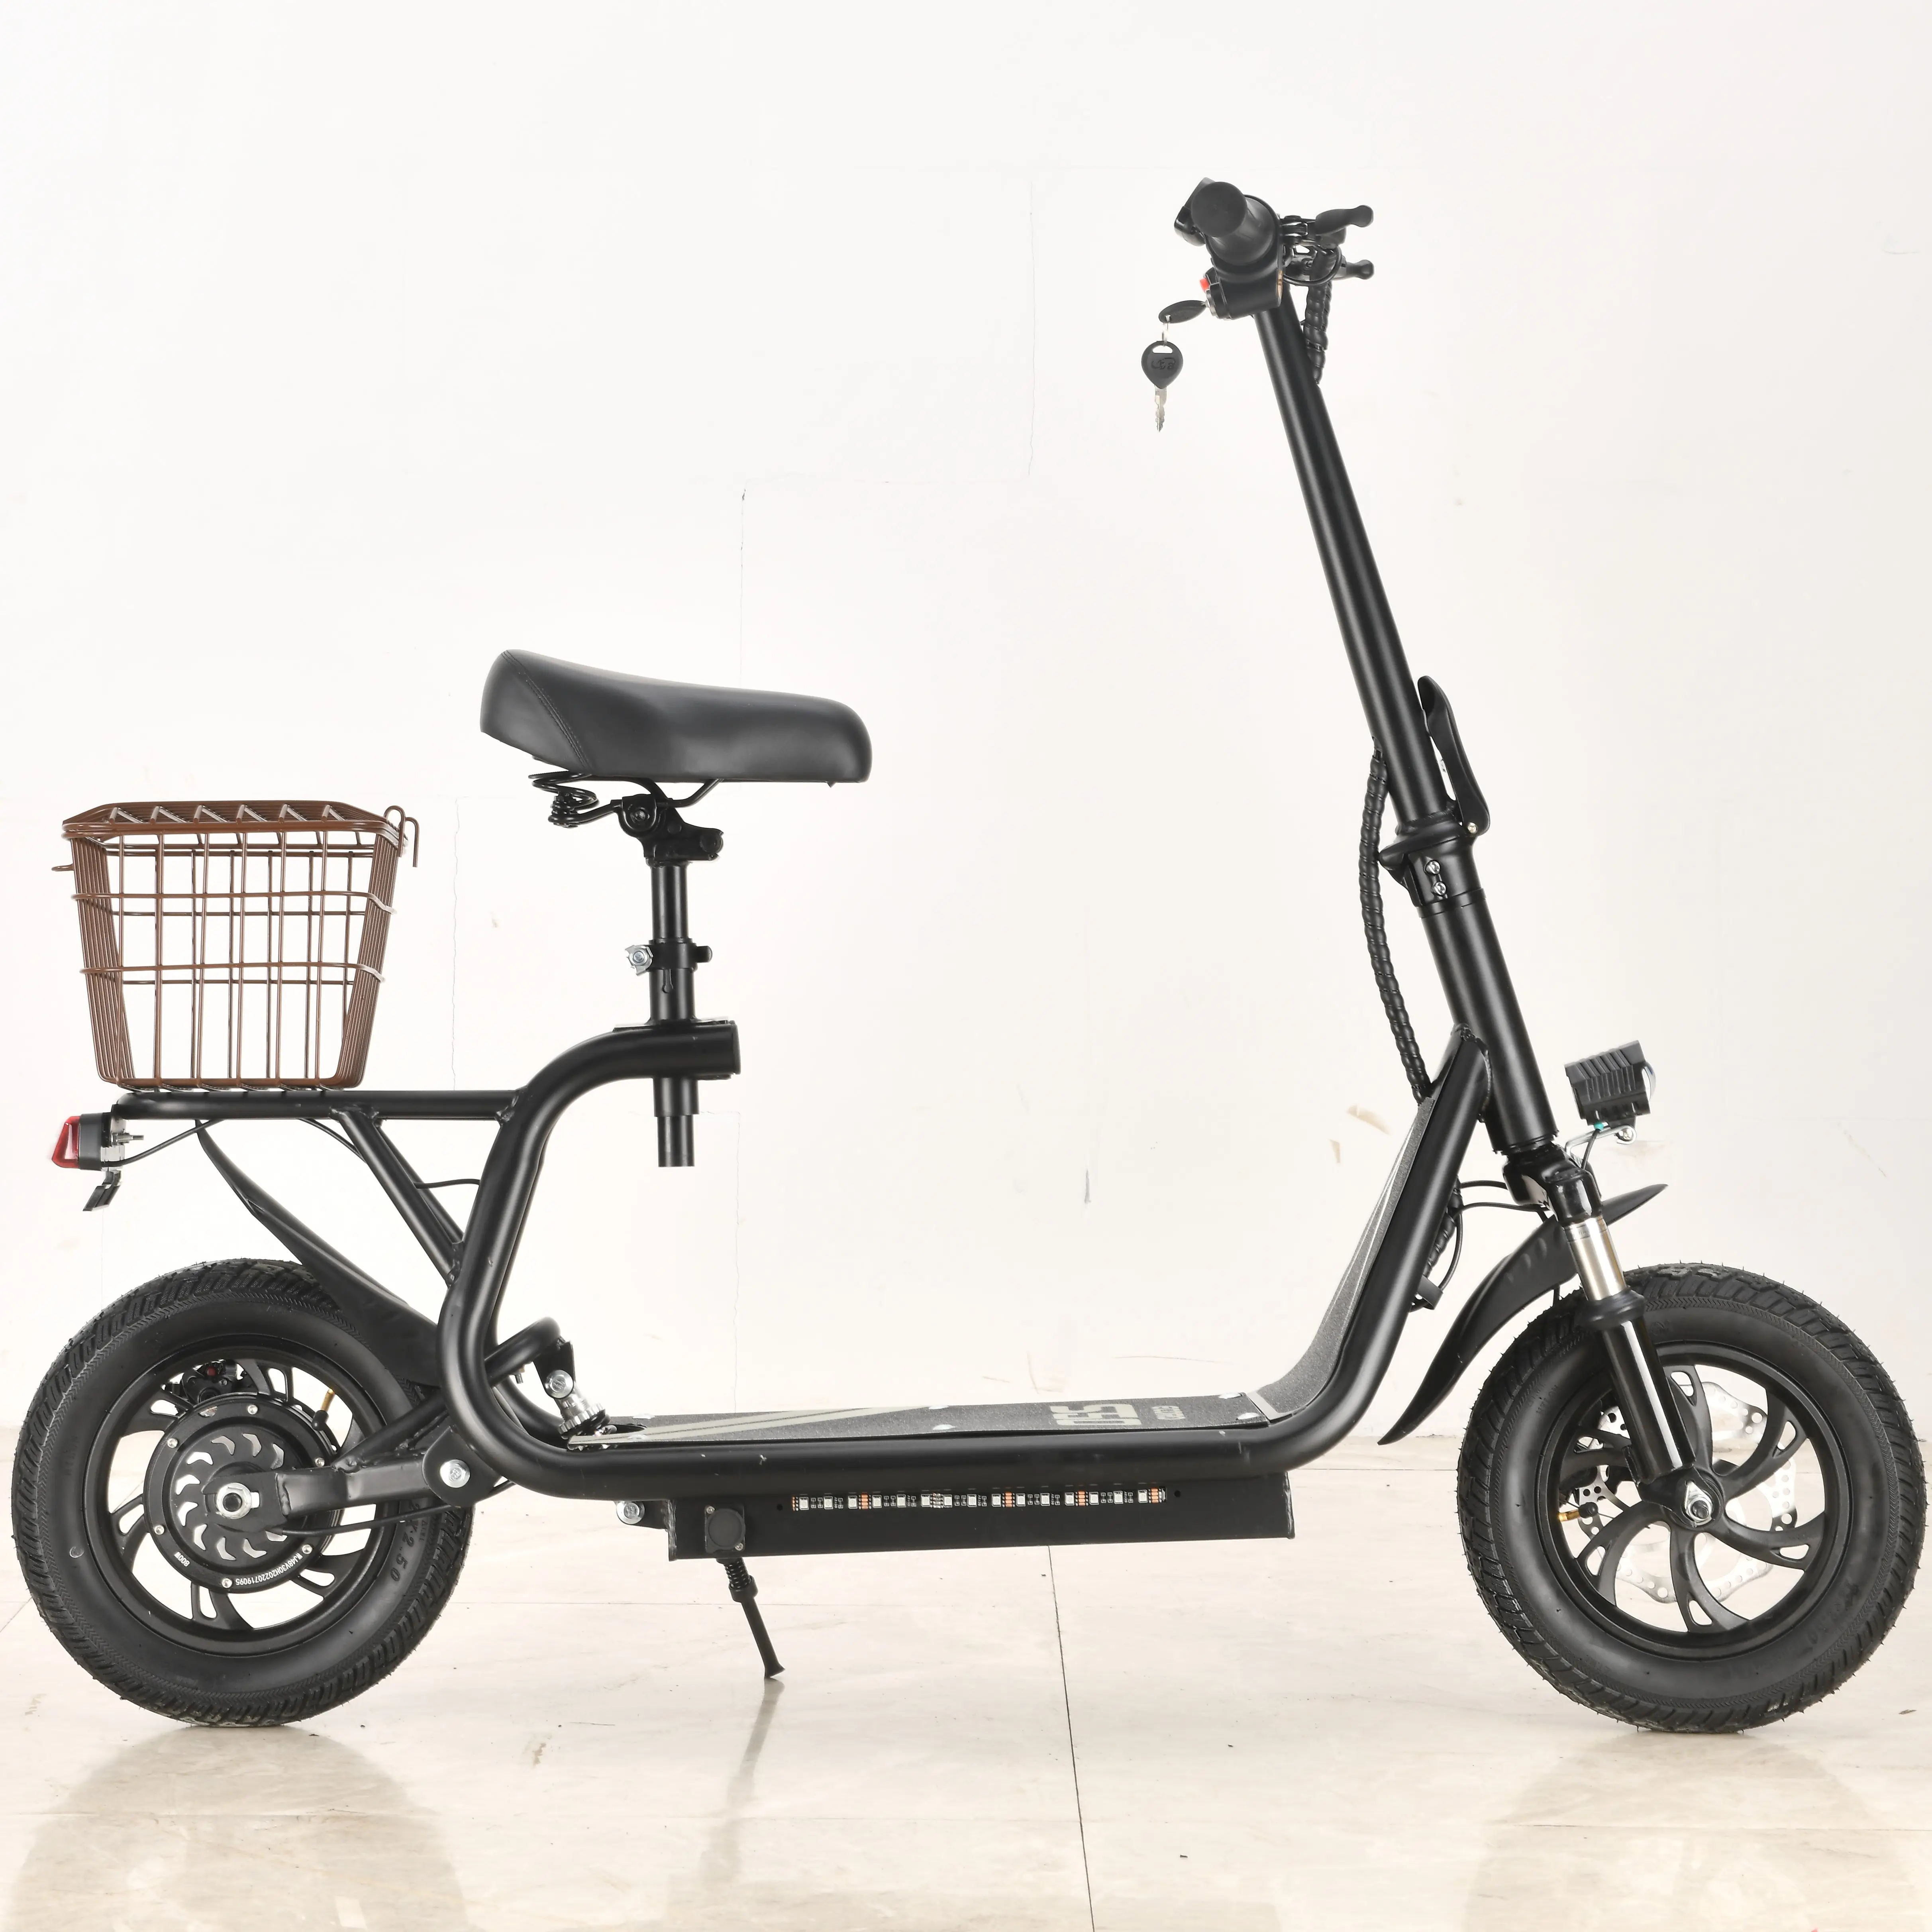 Электрический скутер 2020 новейший дизайн частная модель 12 дюймов 2 колеса Макс светодиодная рама двигателя унисекс батарея время зарядки тормоз